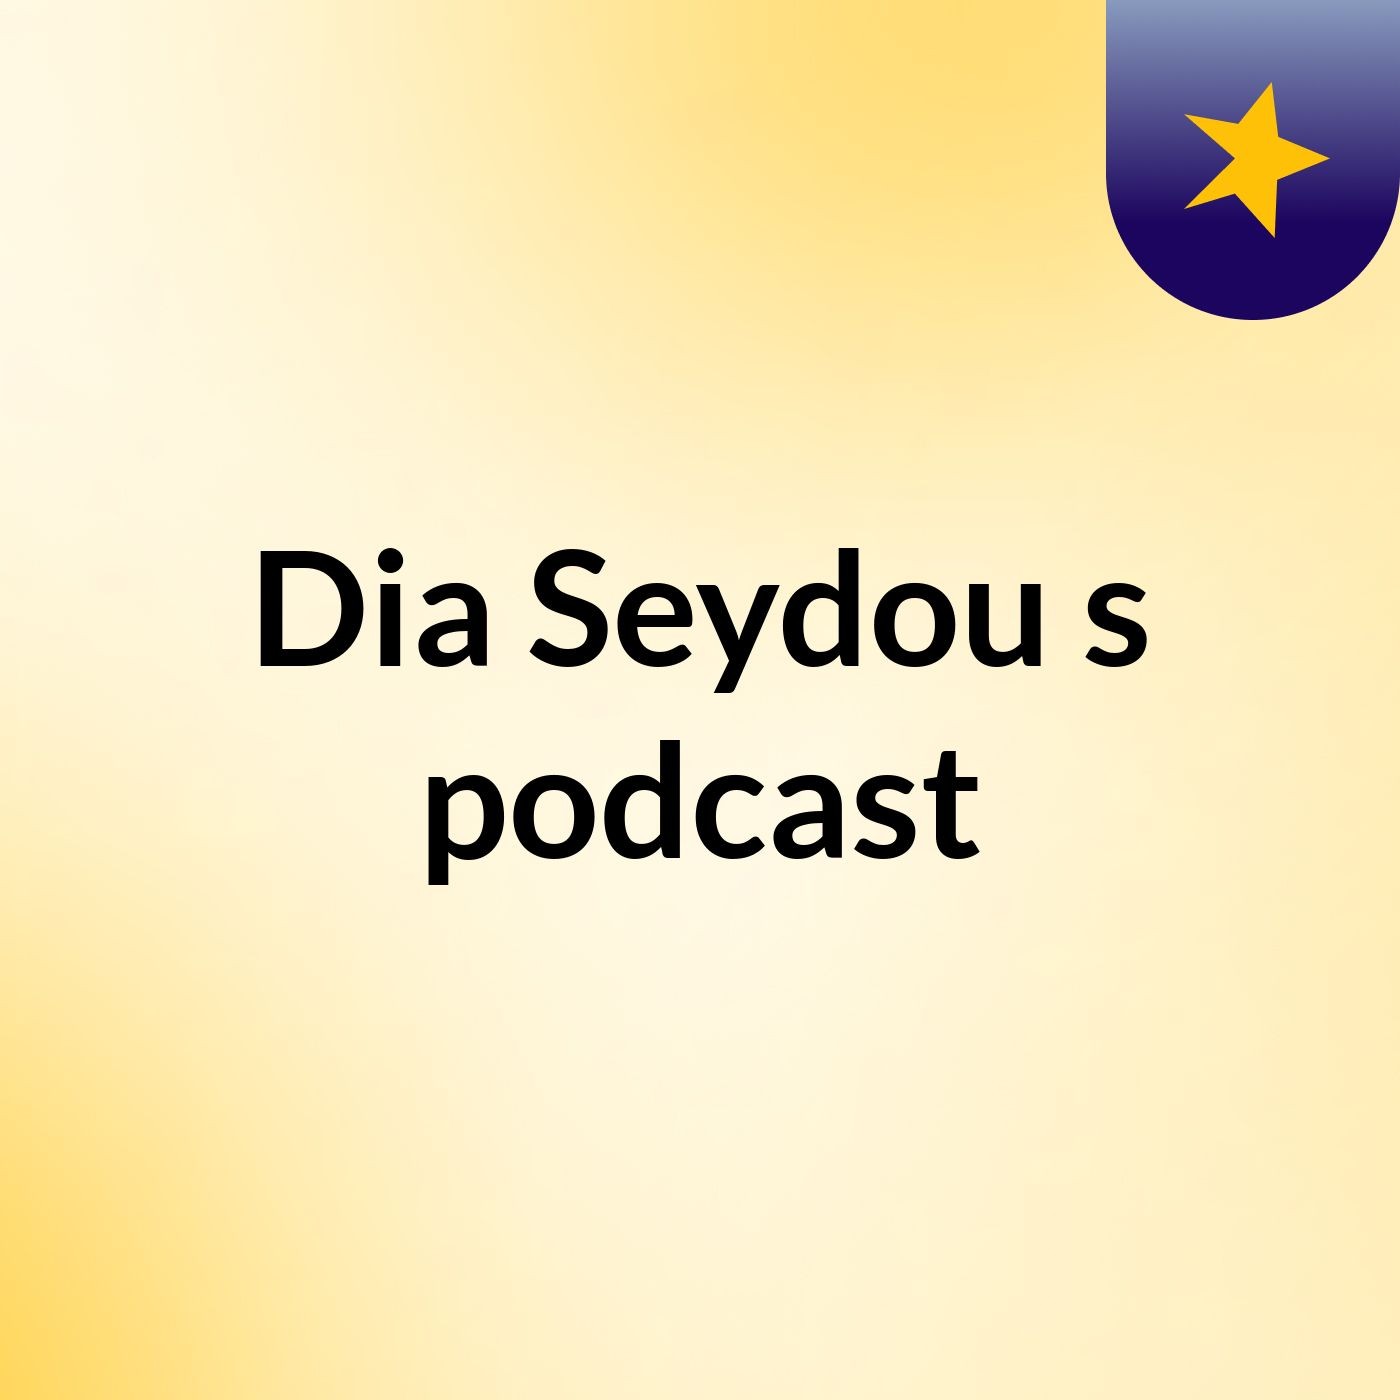 Episode 2 - Dia Seydou's podcast